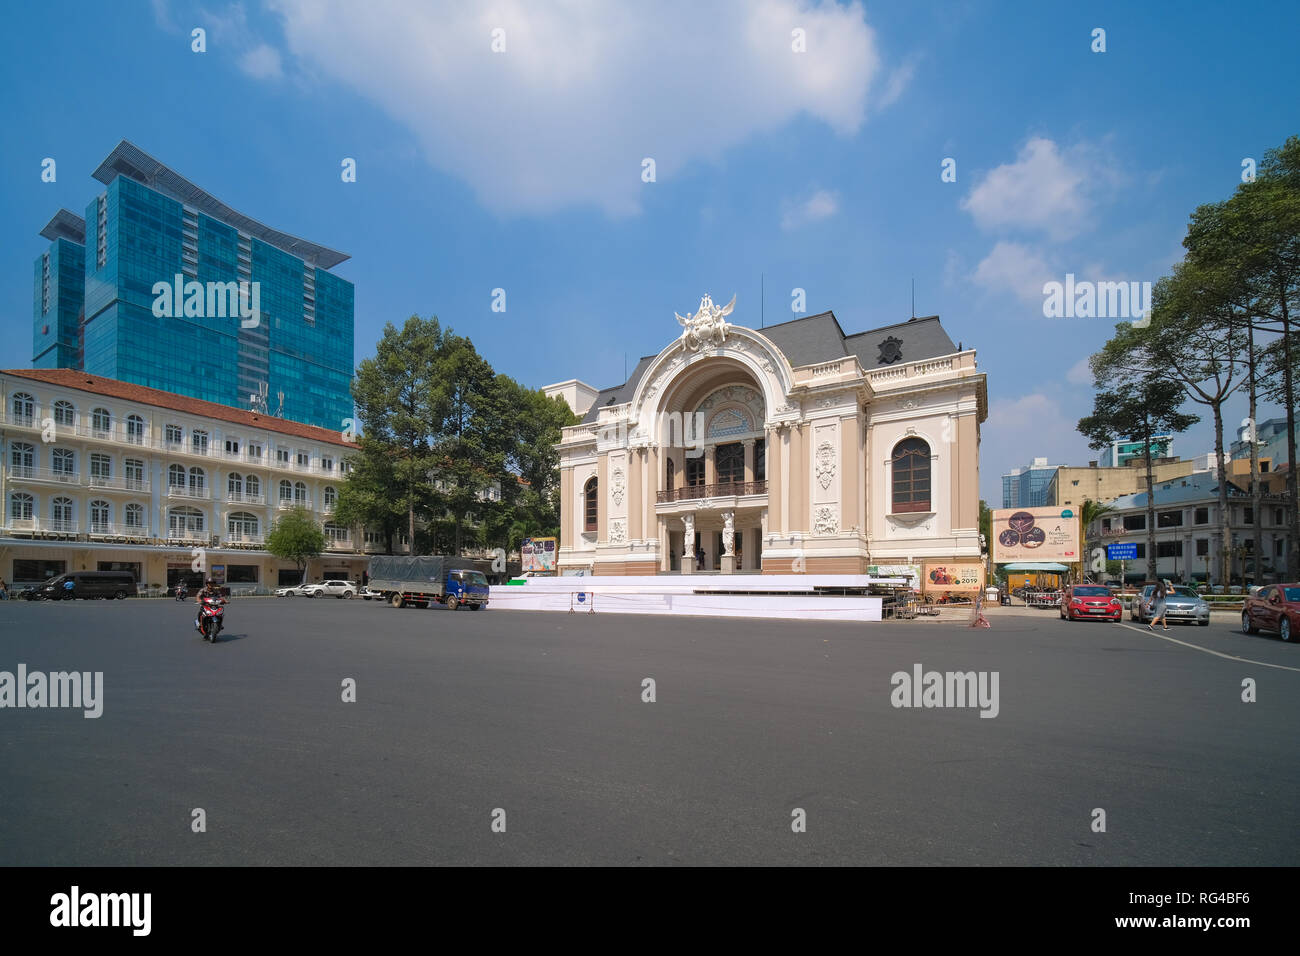 Sai Gon Oper oder griechisch-römischen Frau Statuen der Alten Oper Stadttheater. Saigon Opera House ist berühmt für Reisen in Ho Chi Minh City Stockfoto